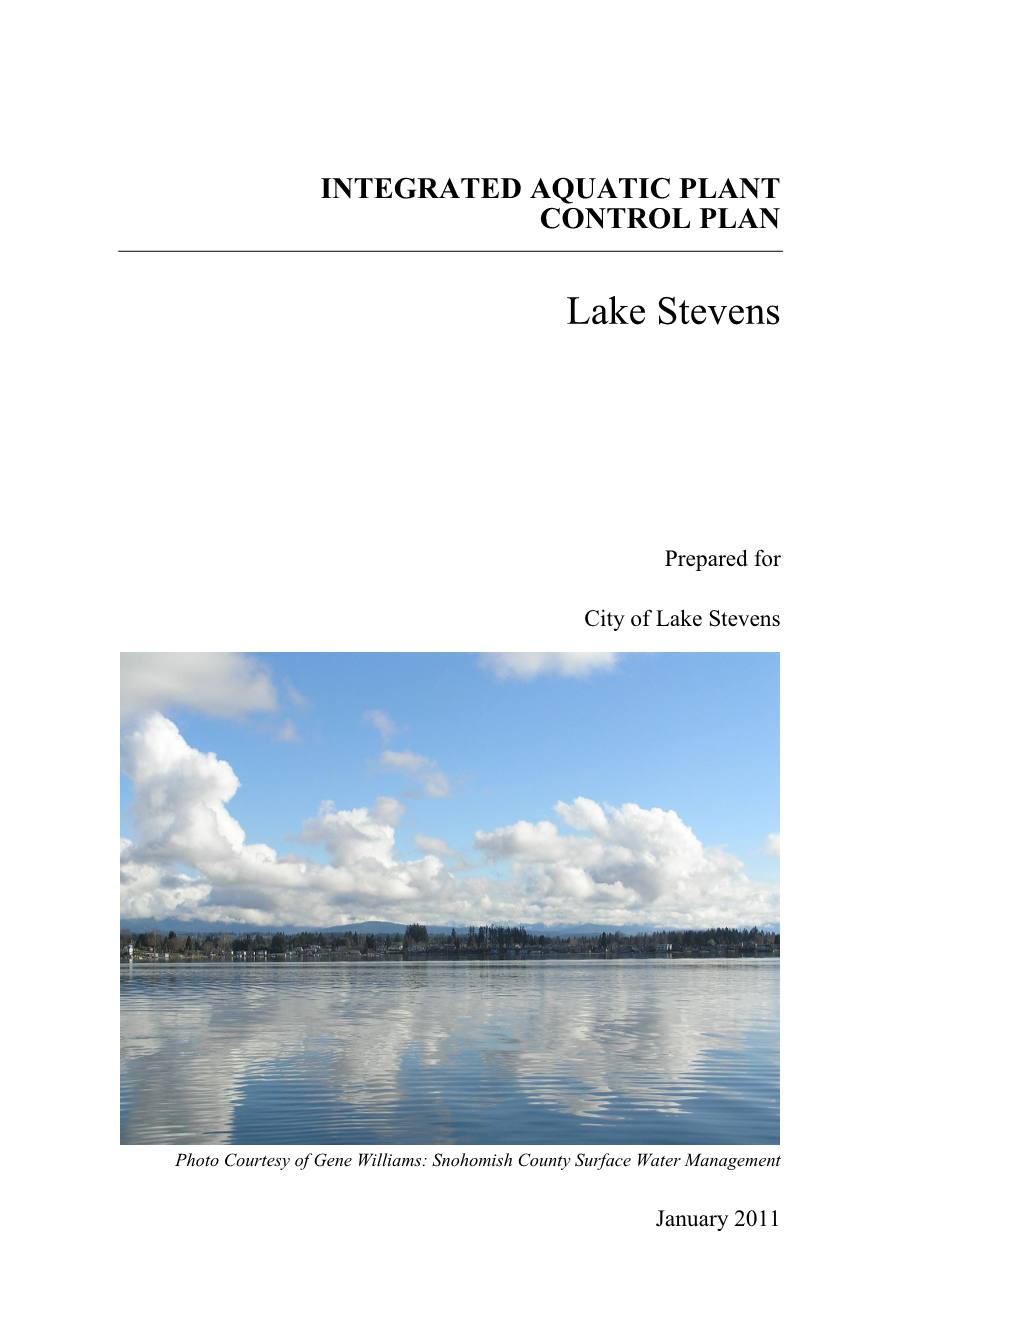 Integrated Aquatic Plant Control Plan